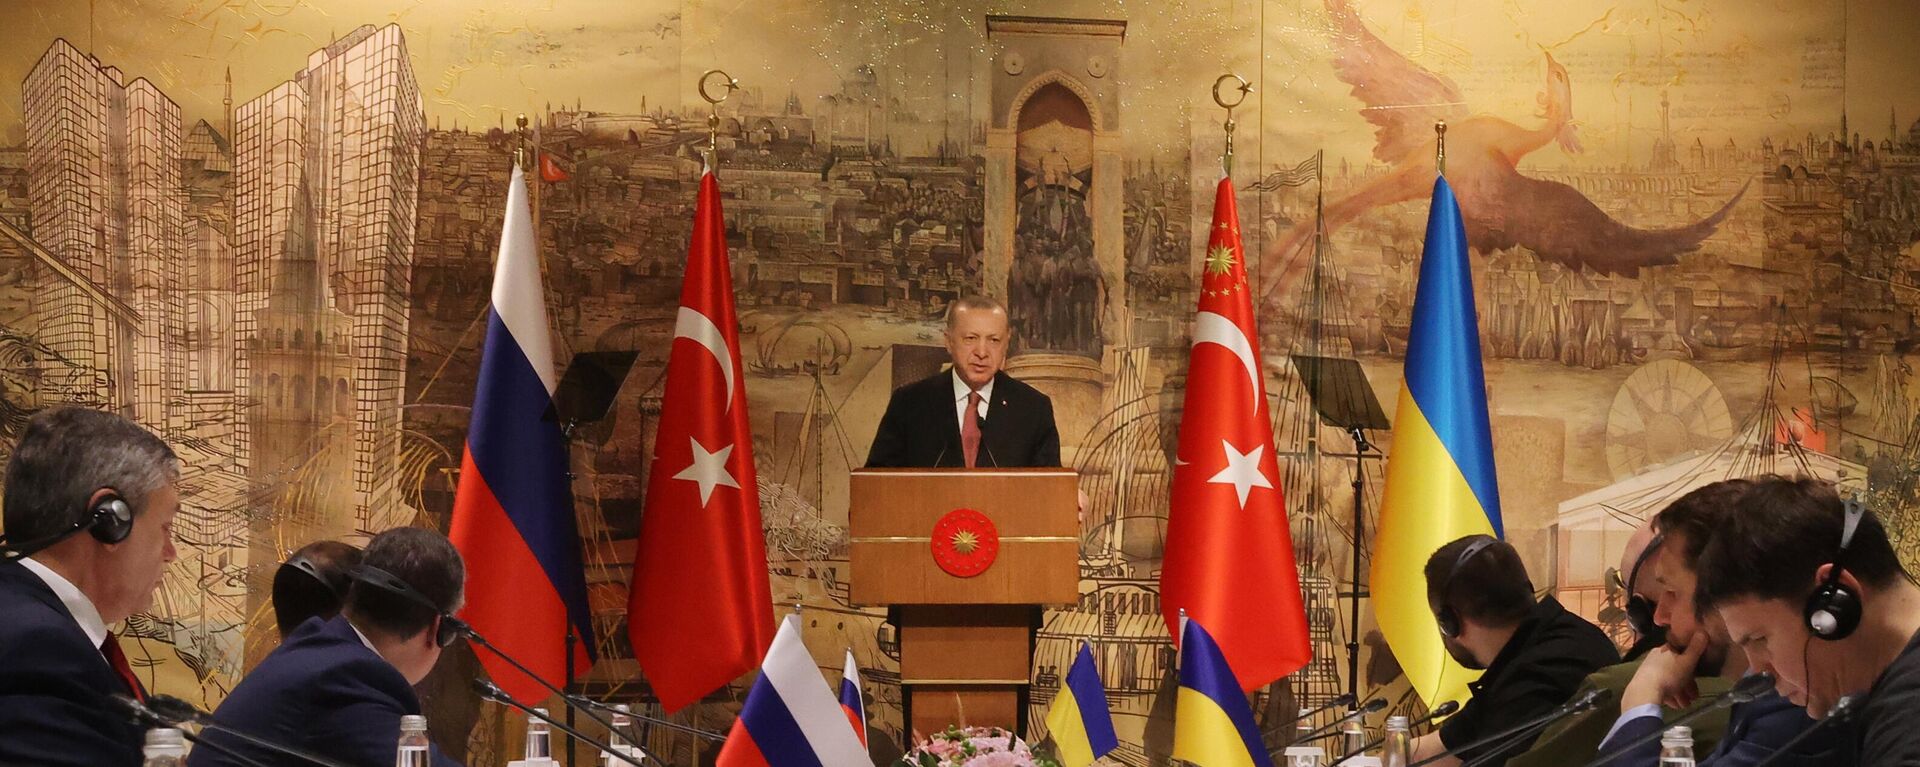 Tổng thống Thổ Nhĩ Kỳ Recep Tayyip Erdogan phát biểu trong cuộc hội đàm Nga-Ukraina tại Cung điện Dolmabahce ở Istanbul. - Sputnik Việt Nam, 1920, 13.07.2022